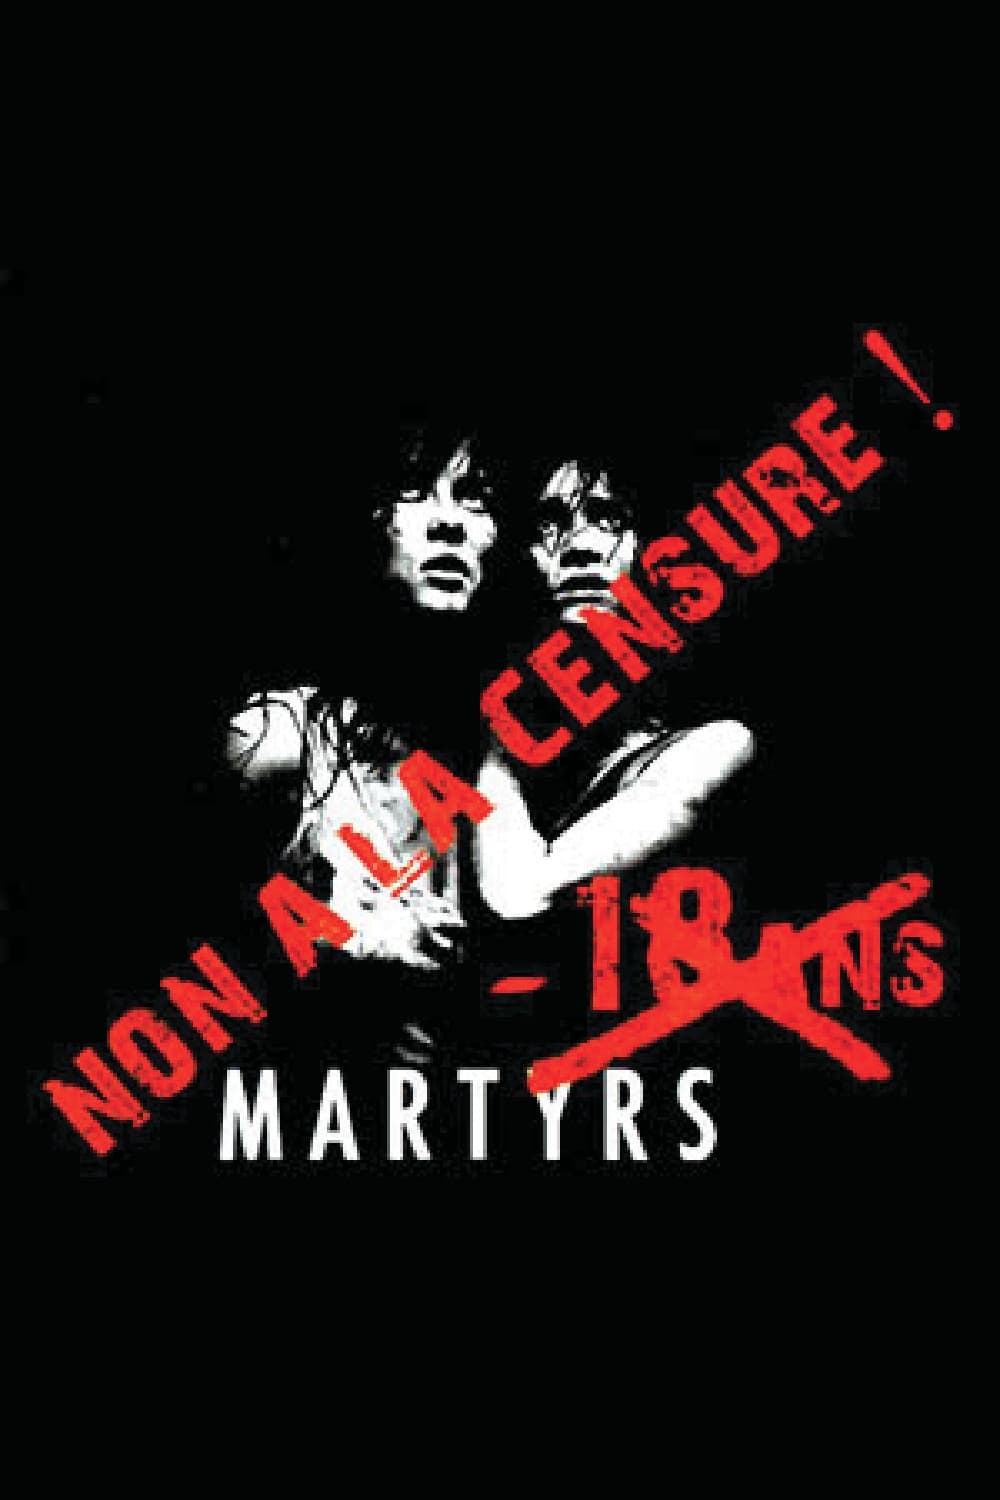 Martyrs vs Censorship